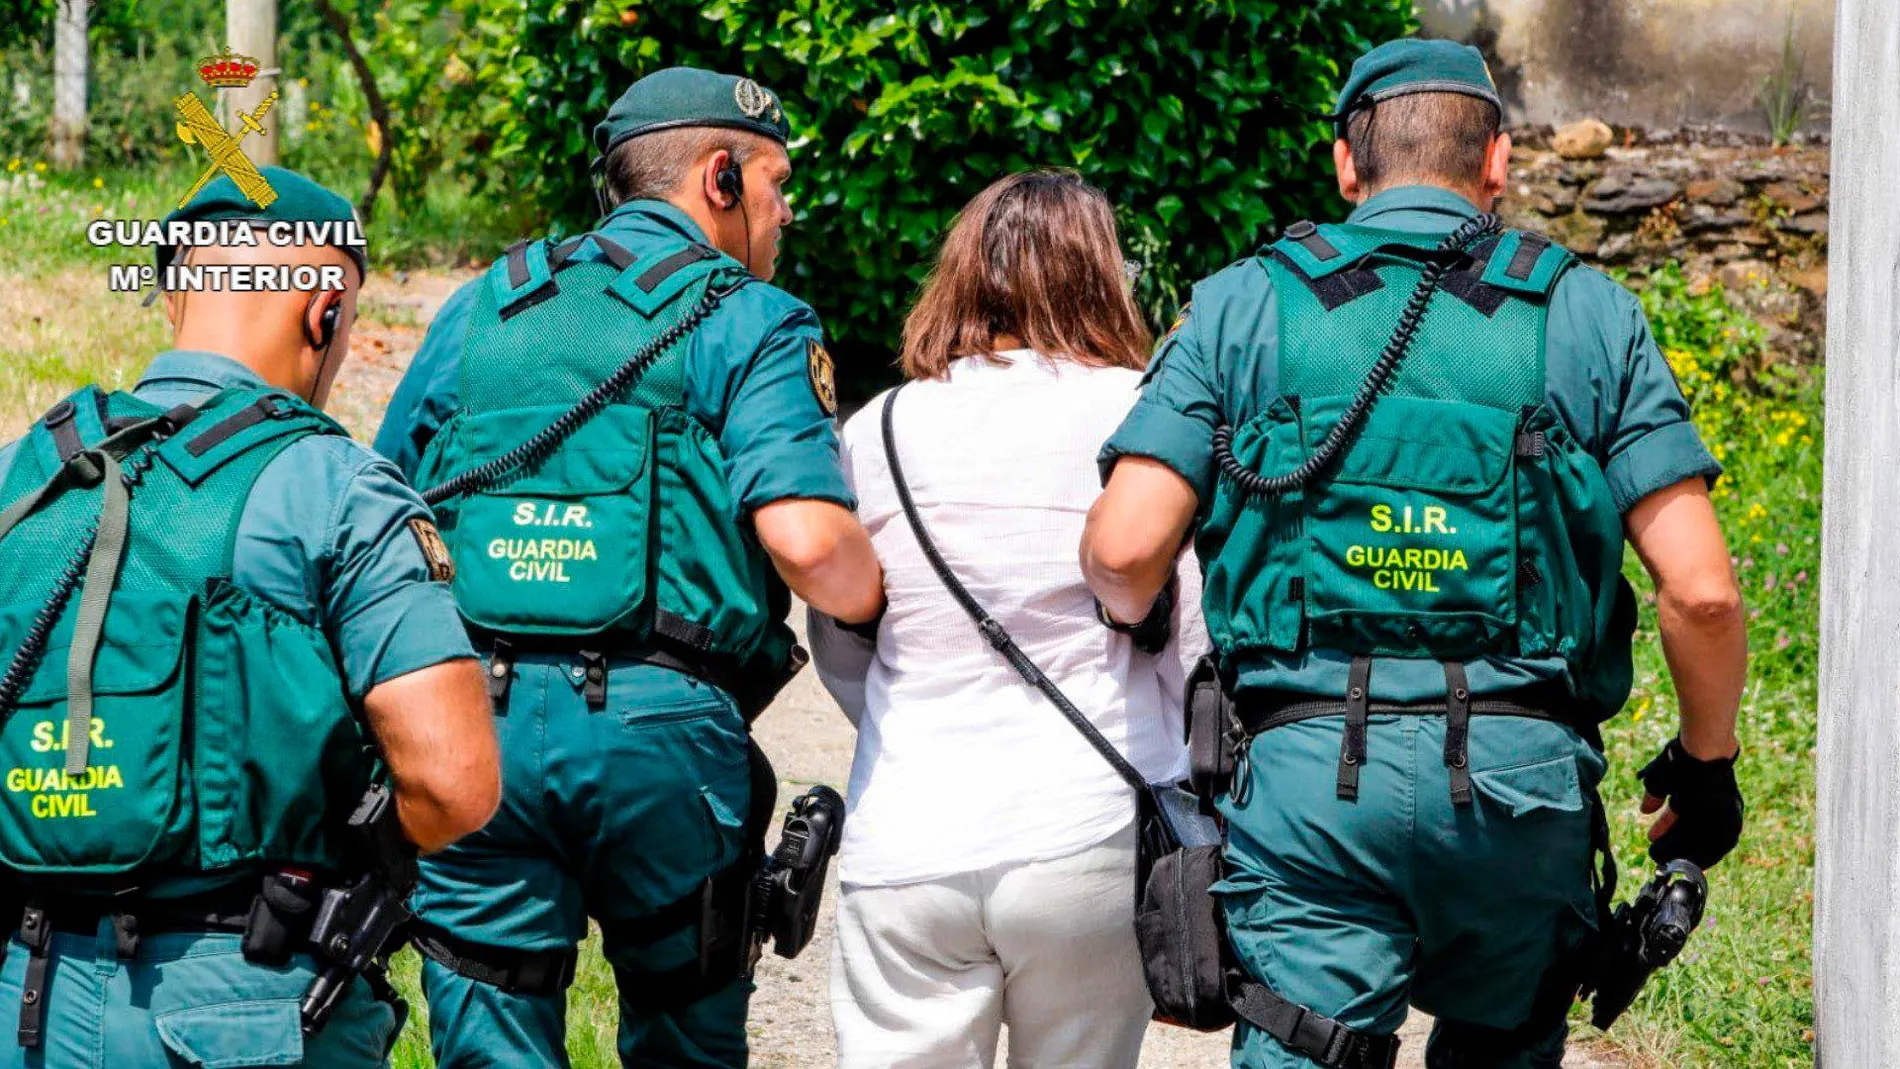 La Guardia Civil deteniendo a la mujer que presumiblemente iba a atentar en Santiago de Compostela